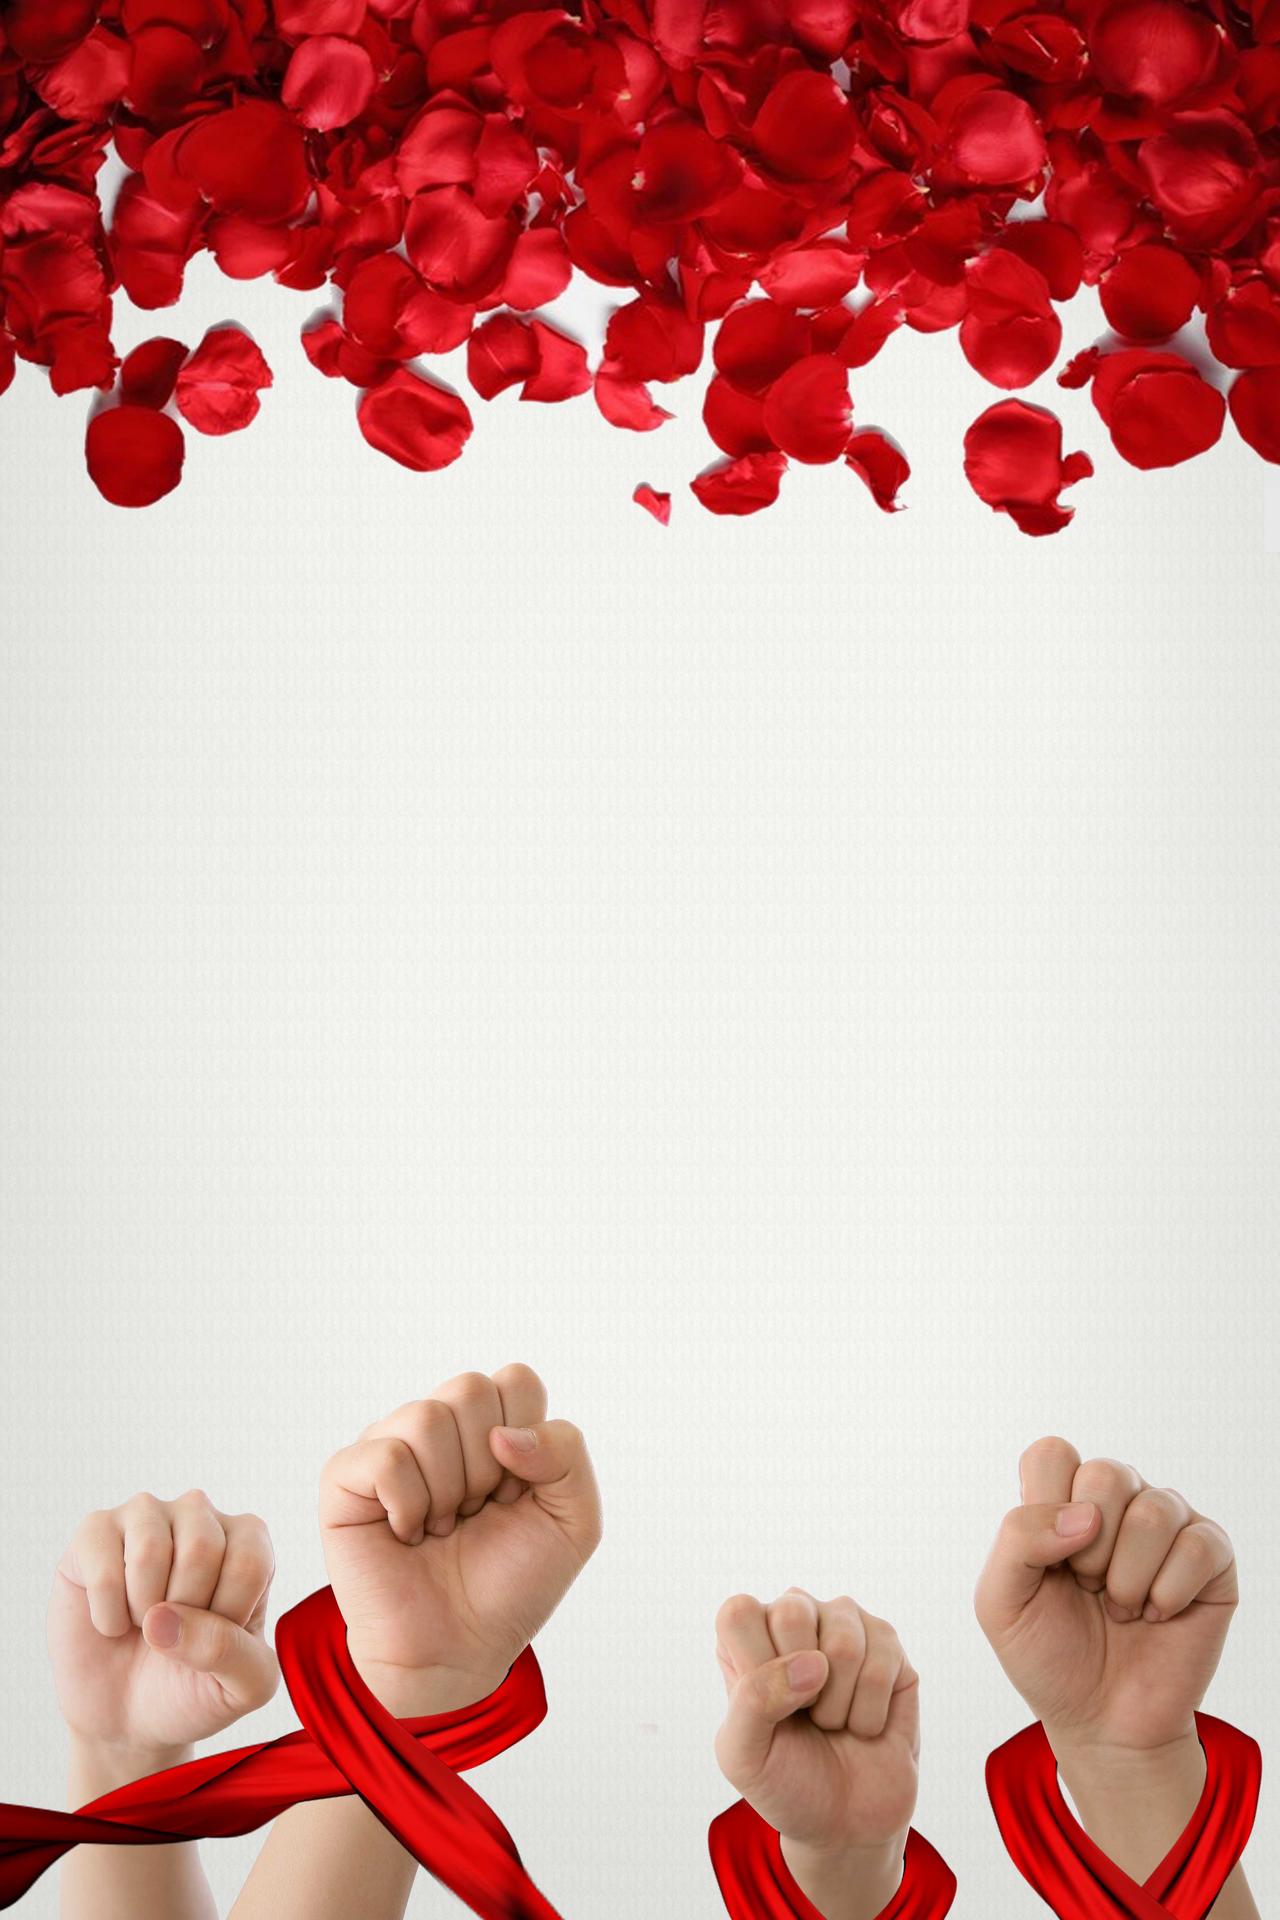 红色拳头红丝带红玫瑰花瓣世界艾滋病背景素材